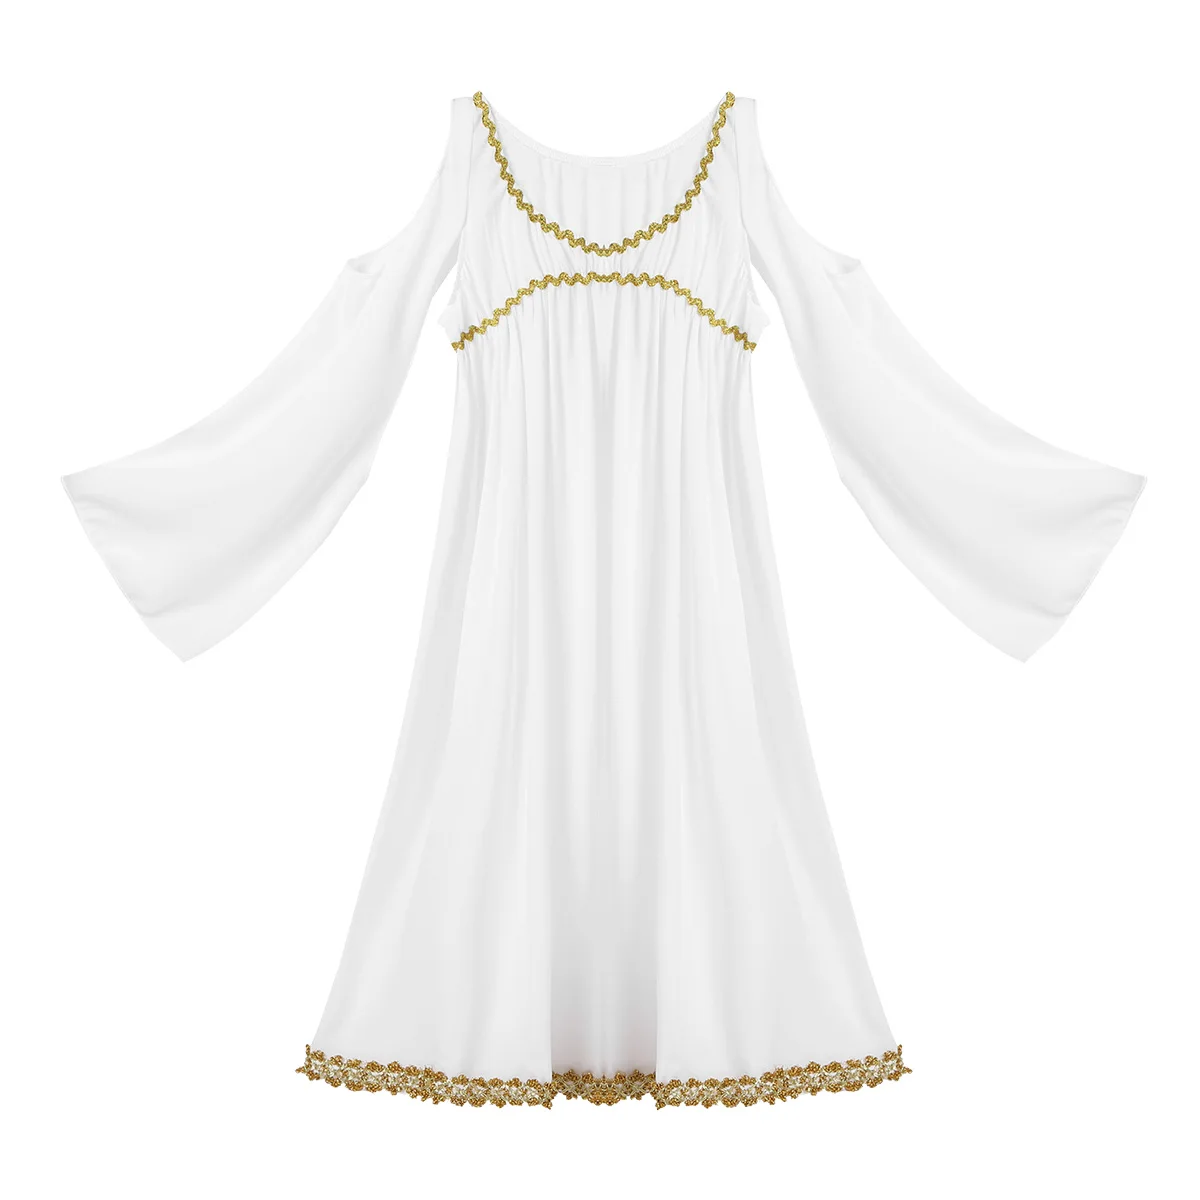 TiaoBug/платье для девочек с золотой отделкой; платье принцессы греческой богини; Детский костюм на Хэллоуин; Детские вечерние костюмы для костюмированной вечеринки; Длинное нарядное платье